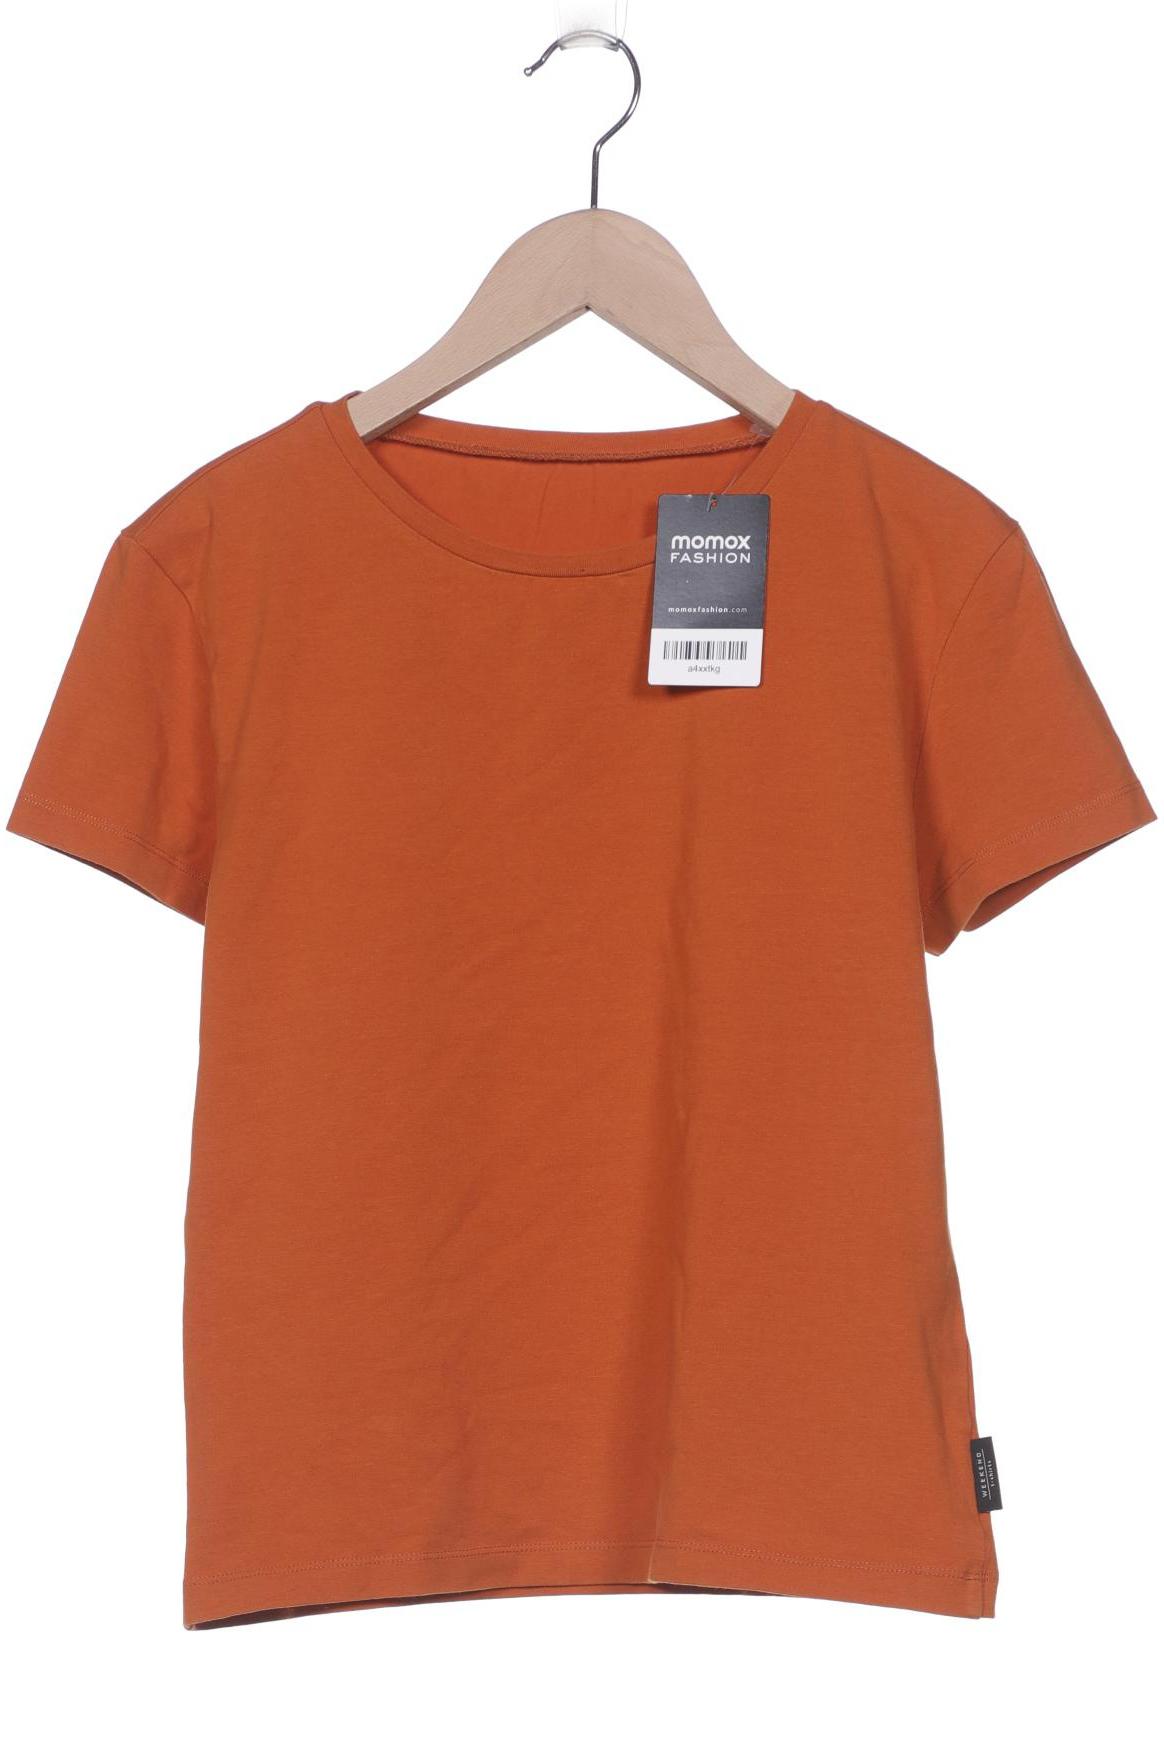 Weekend Max Mara Damen T-Shirt, orange, Gr. 38 von WEEKEND Max Mara